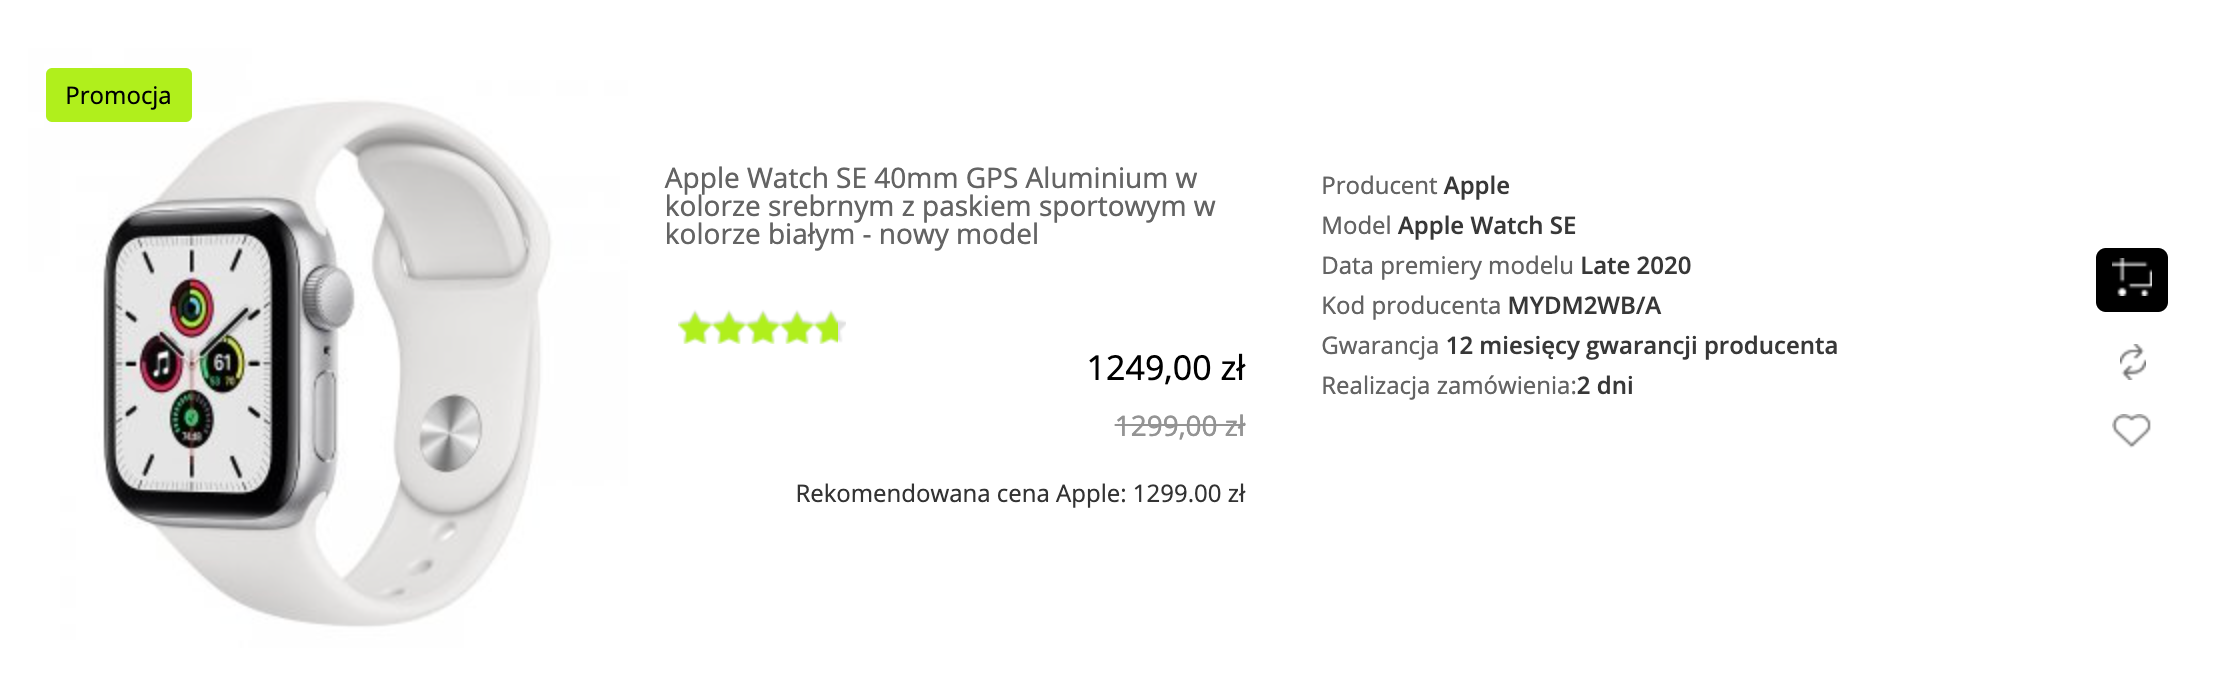 Apple Watch SE 40mm GPS Aluminium w kolorze srebrnym z paskiem sportowym w kolorze białym - MYDM2WB/A 